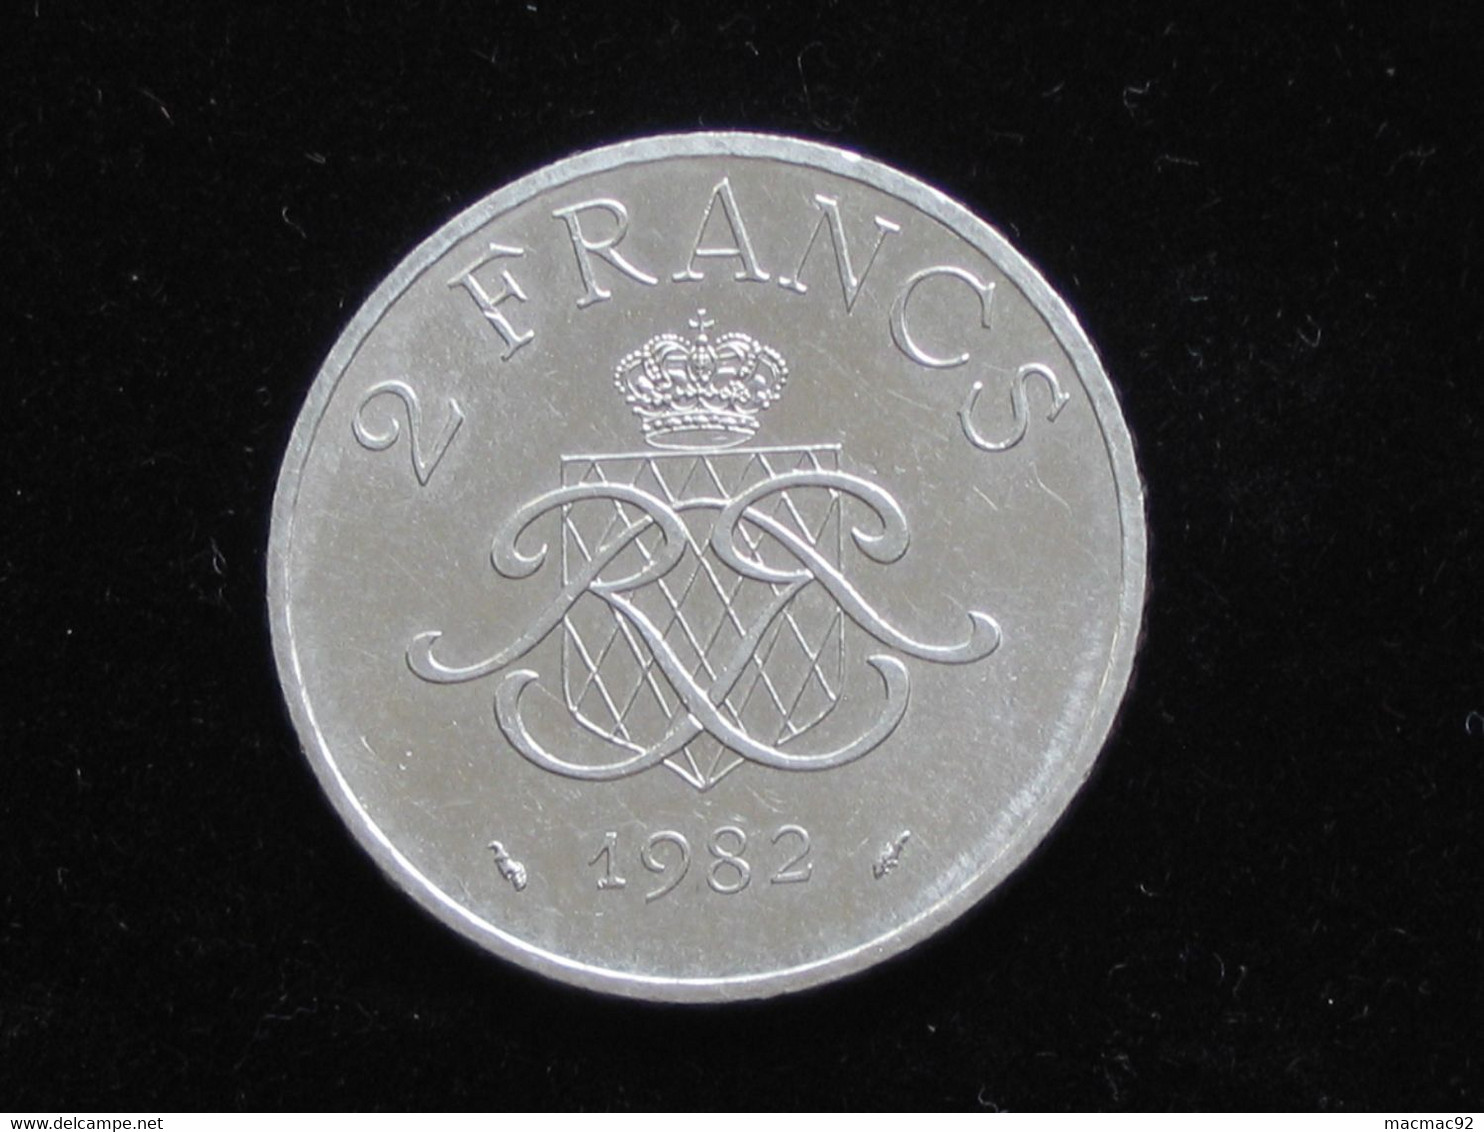 MONACO - 2 Francs 1982 - Rainier III Prince De Monaco **** EN ACHAT IMMEDIAT **** - 1949-1956 Francos Antiguos